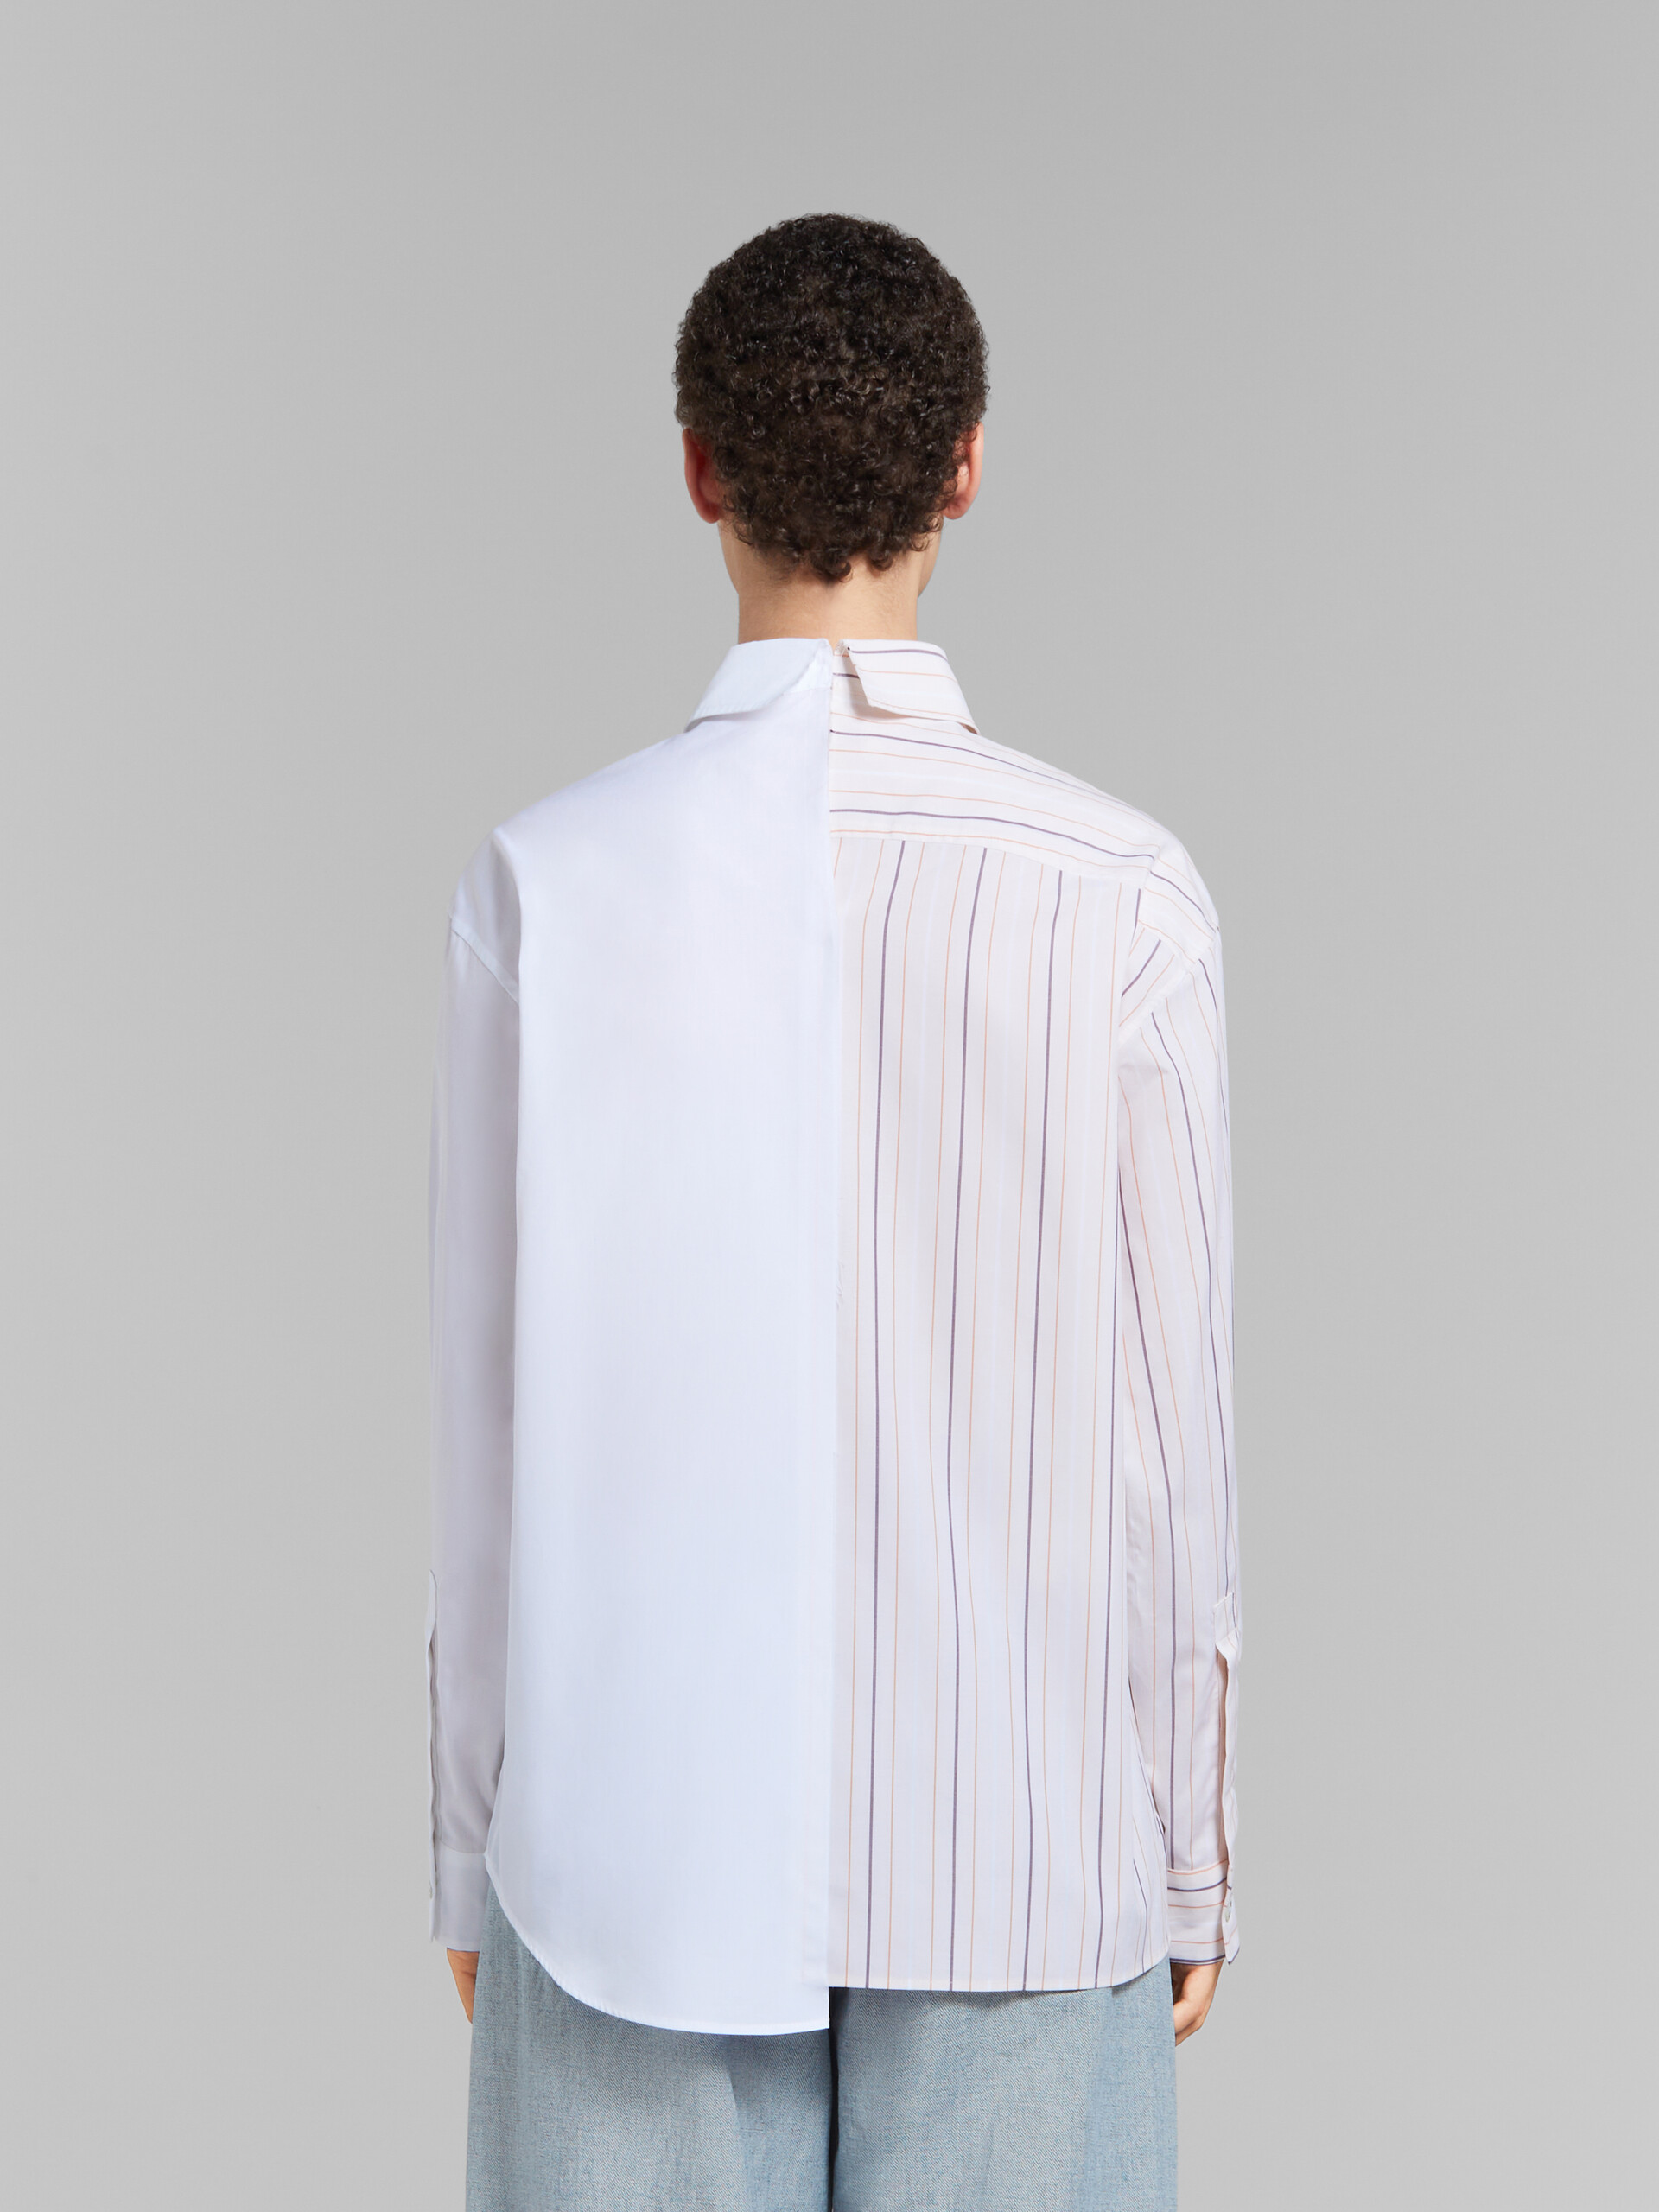 Camisa efecto patchwork de algodón ecológico blanco con rayas - Camisas - Image 3